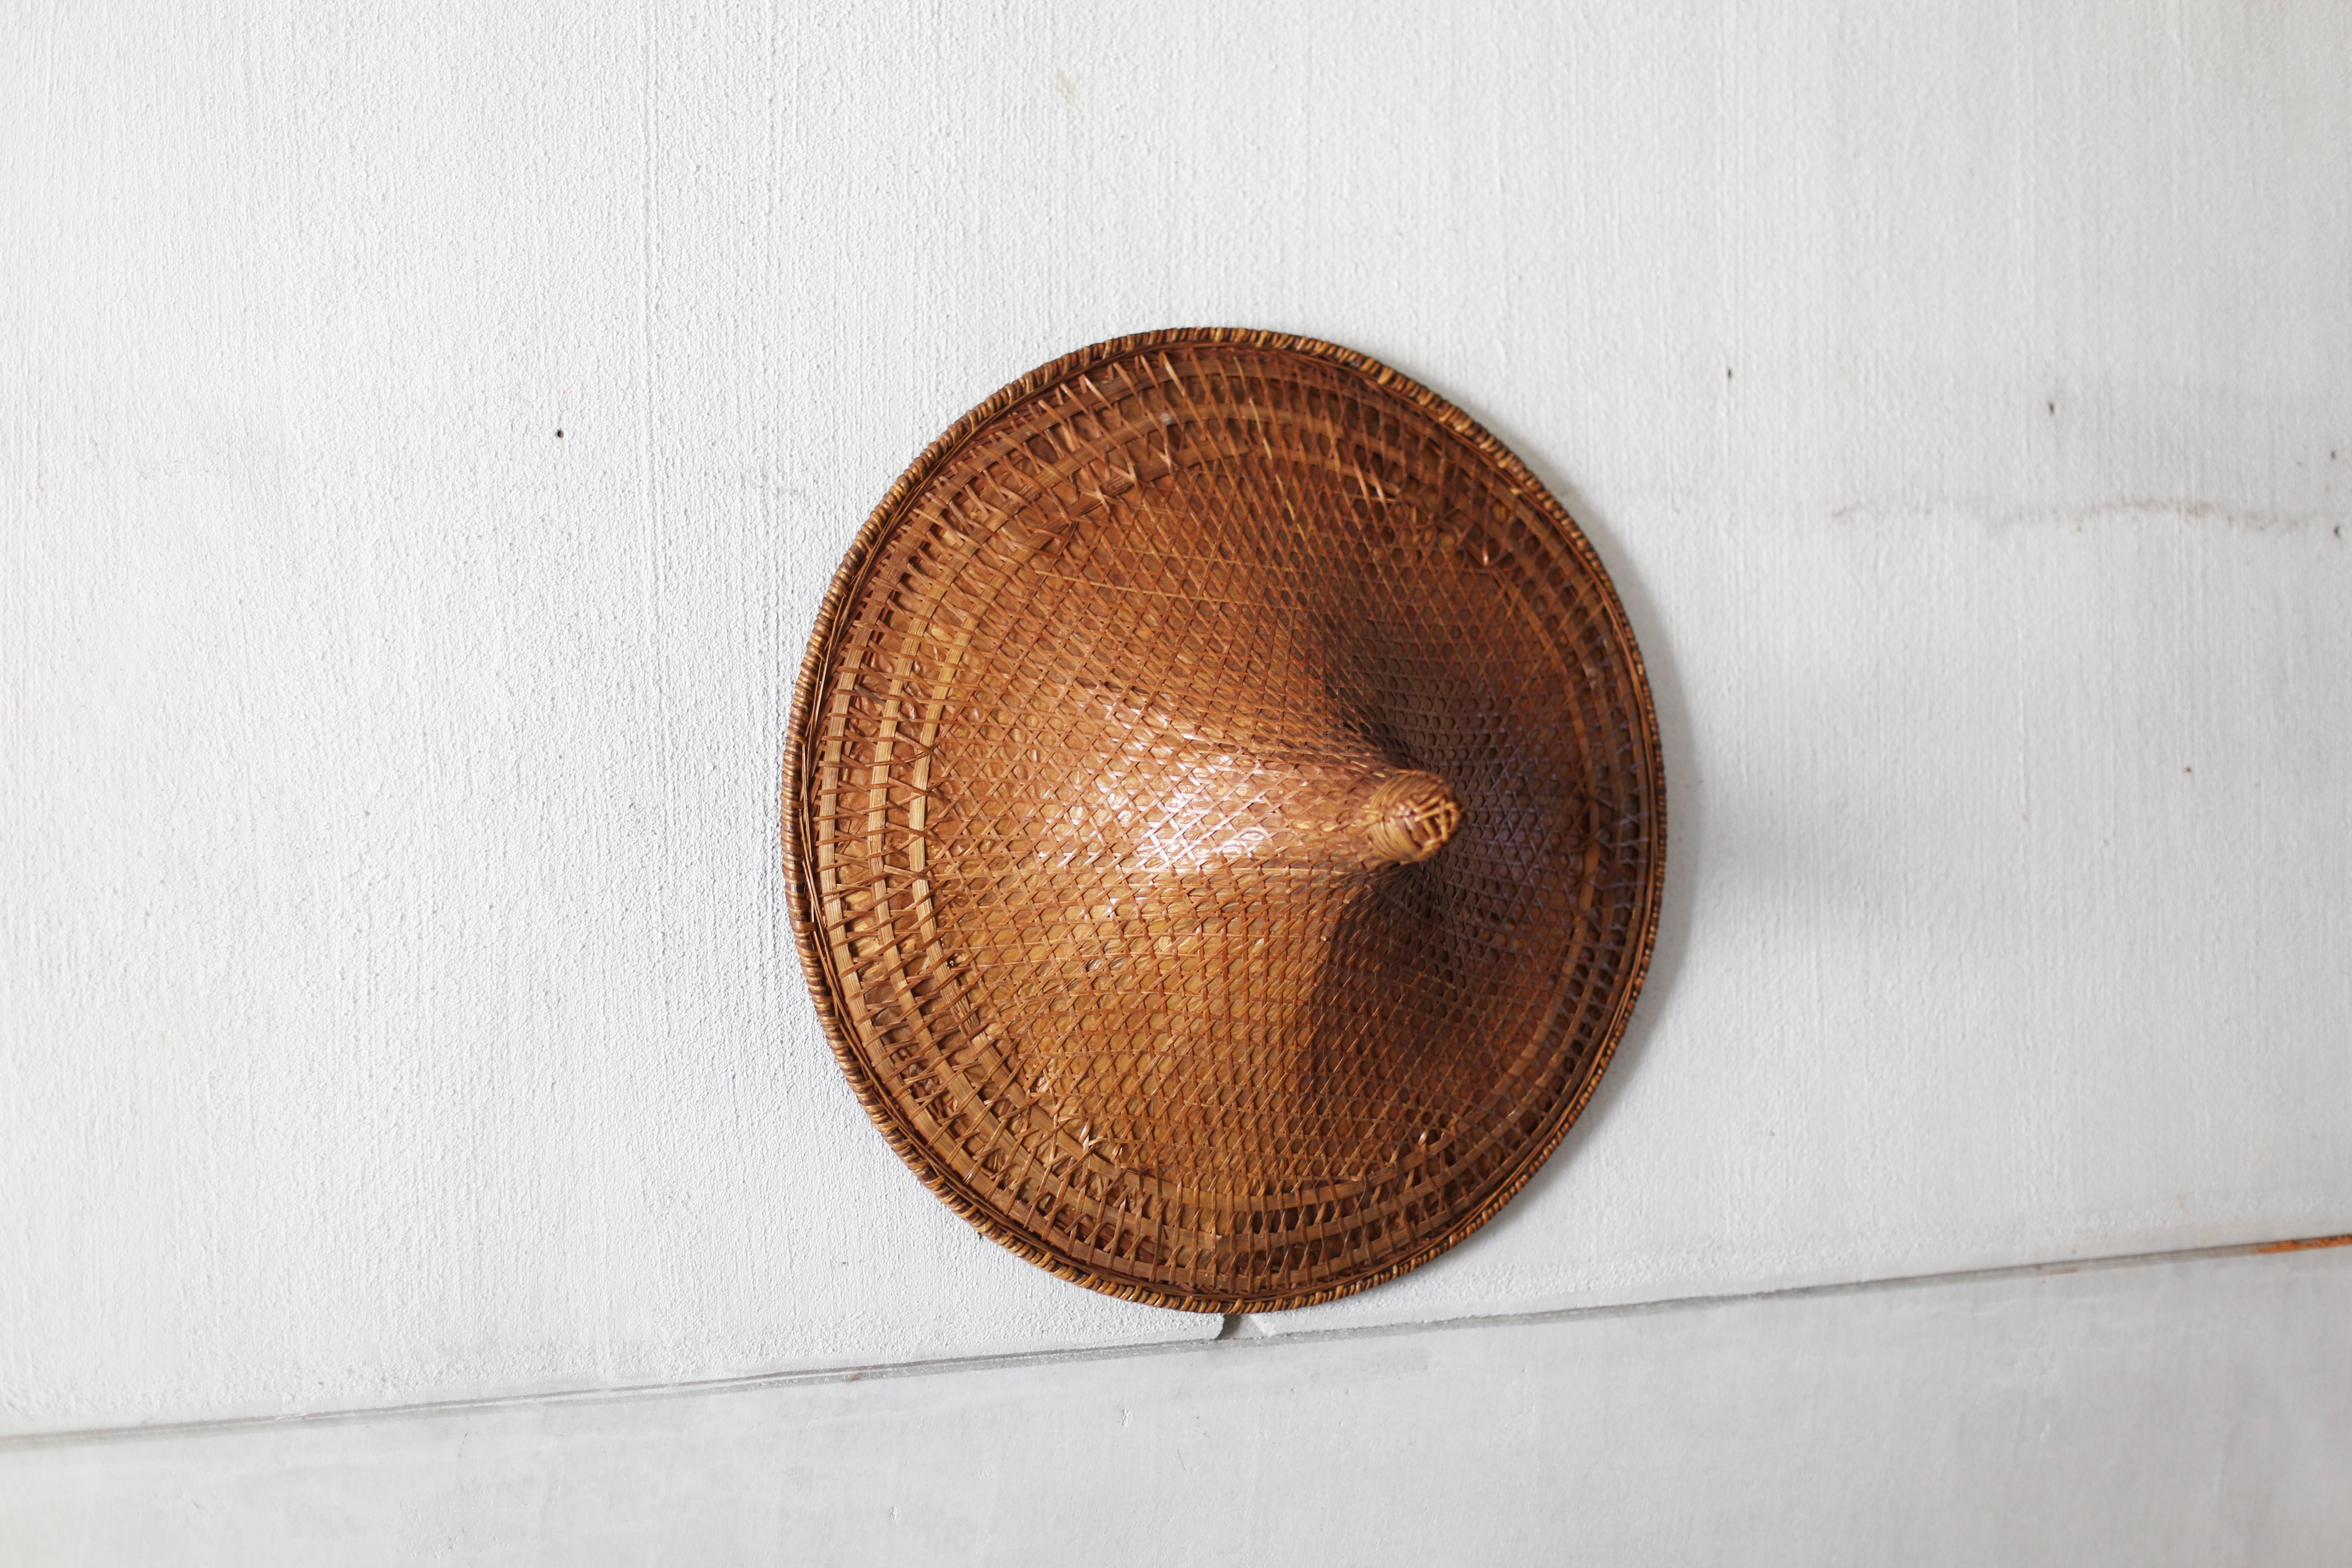 Ein alter Hut, handgeflochten aus Bambus und Stroh.
Wir haben dies in Japan gefunden, aber es ist nicht klar, wo oder wann es hergestellt wurde.
Die Textur des Bambus, die sich im Laufe der Zeit verändert hat, ist erstaunlich.
Das wäre ein schönes